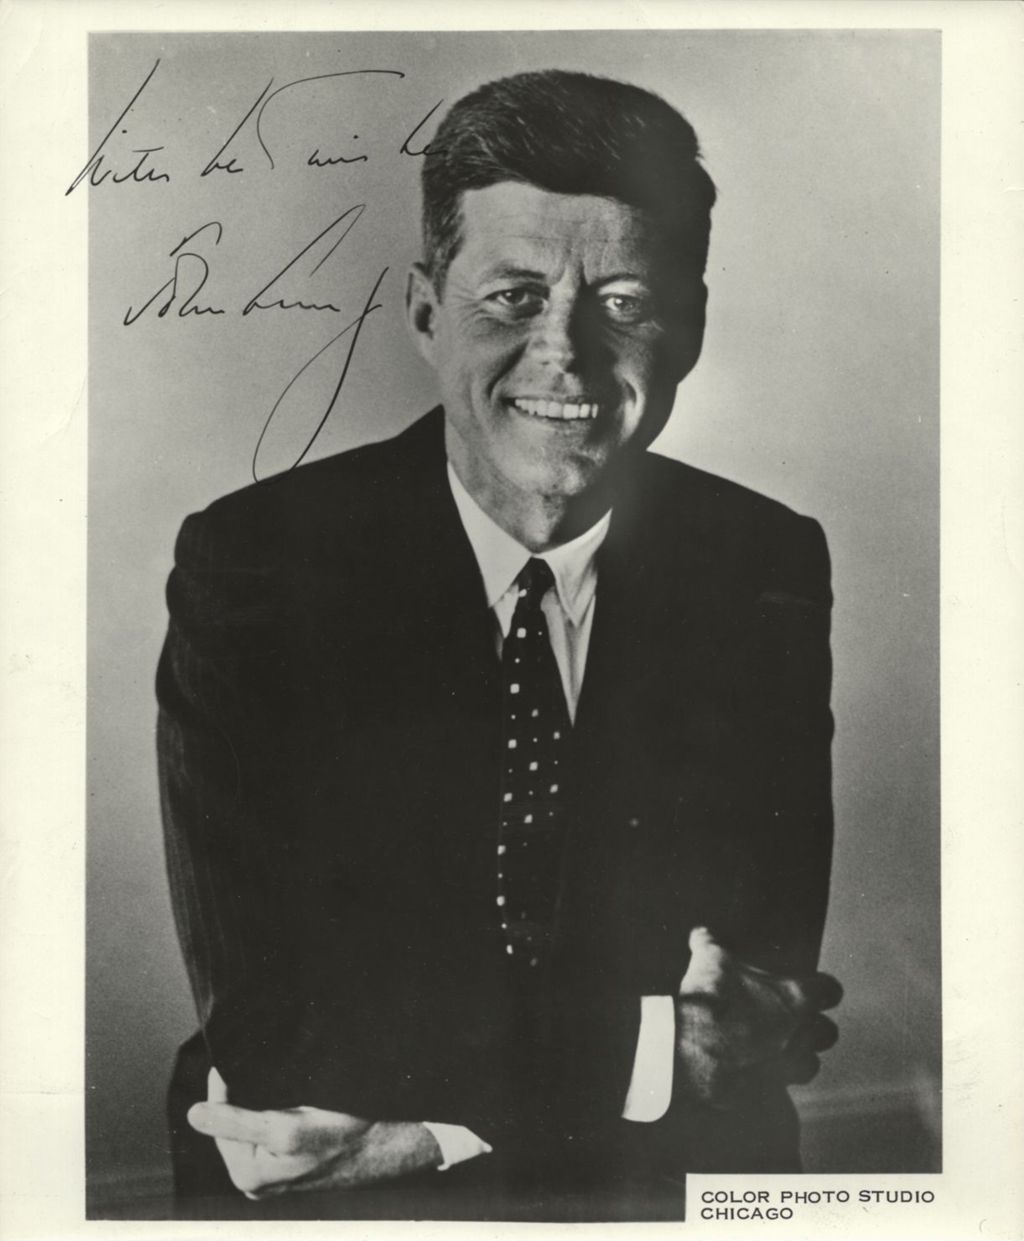 Miniature of Portrait of John F. Kennedy